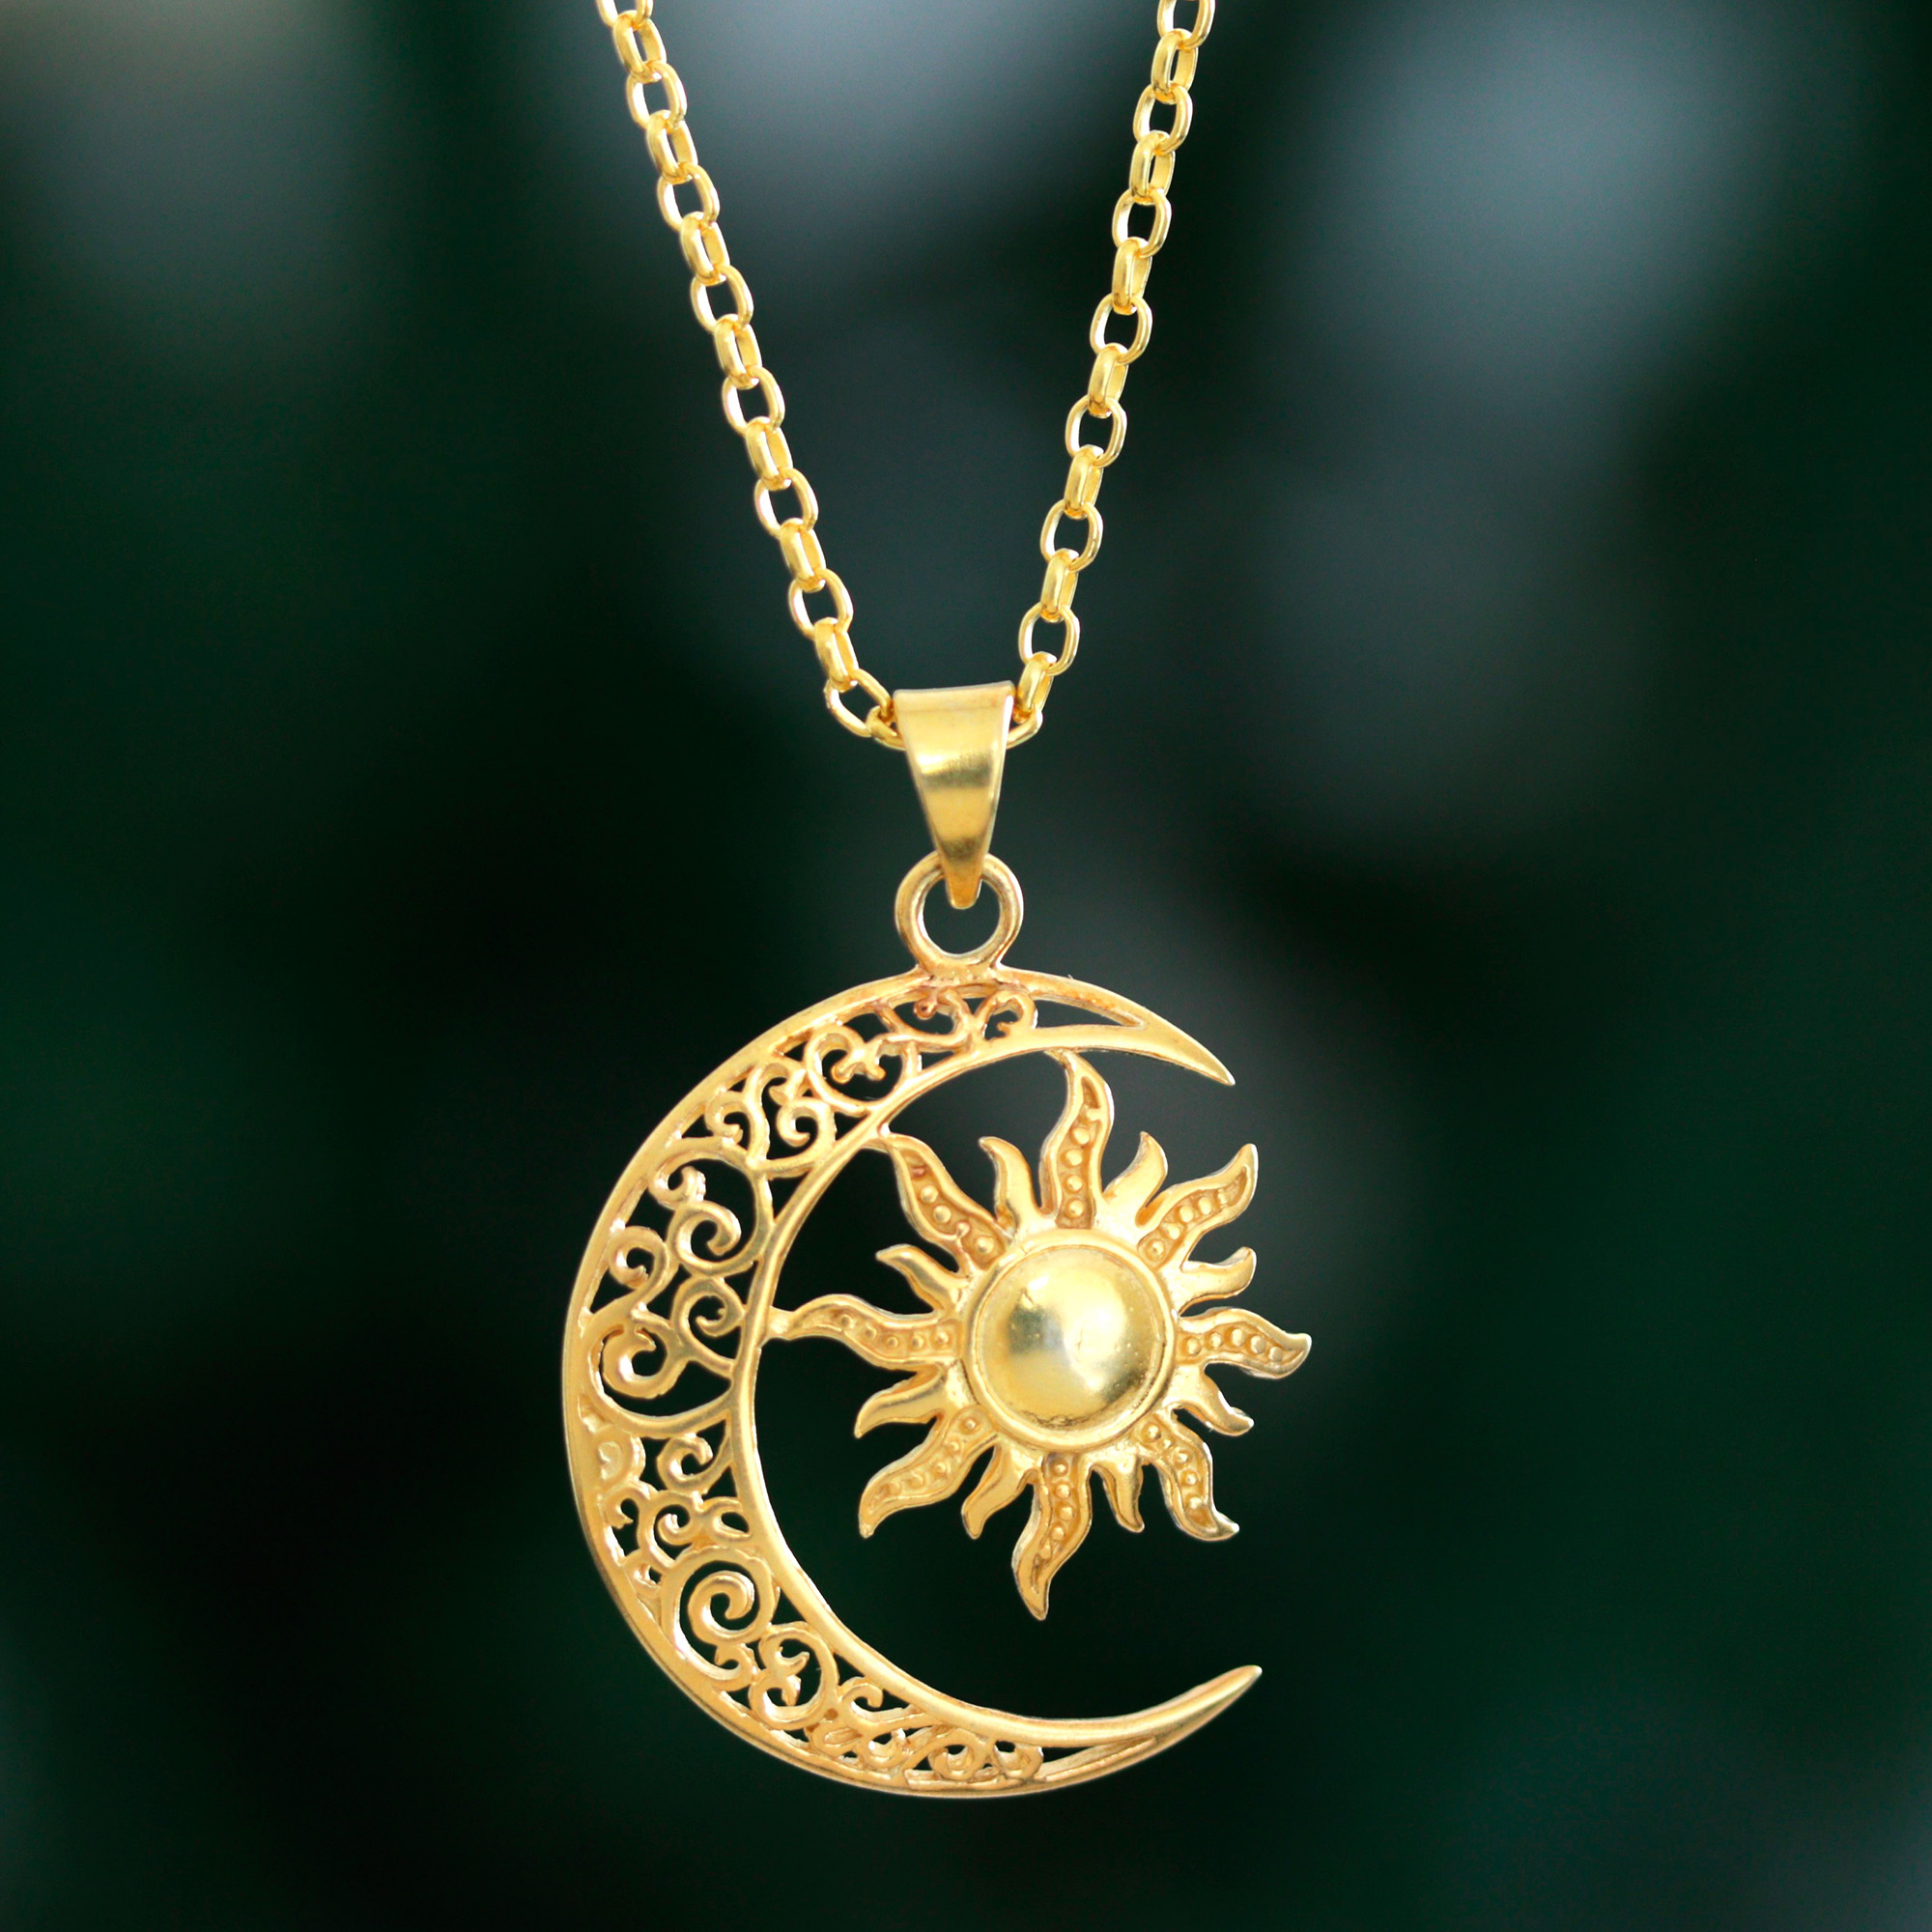 Spiritual Jewelry, Sun and Moon Jewelry